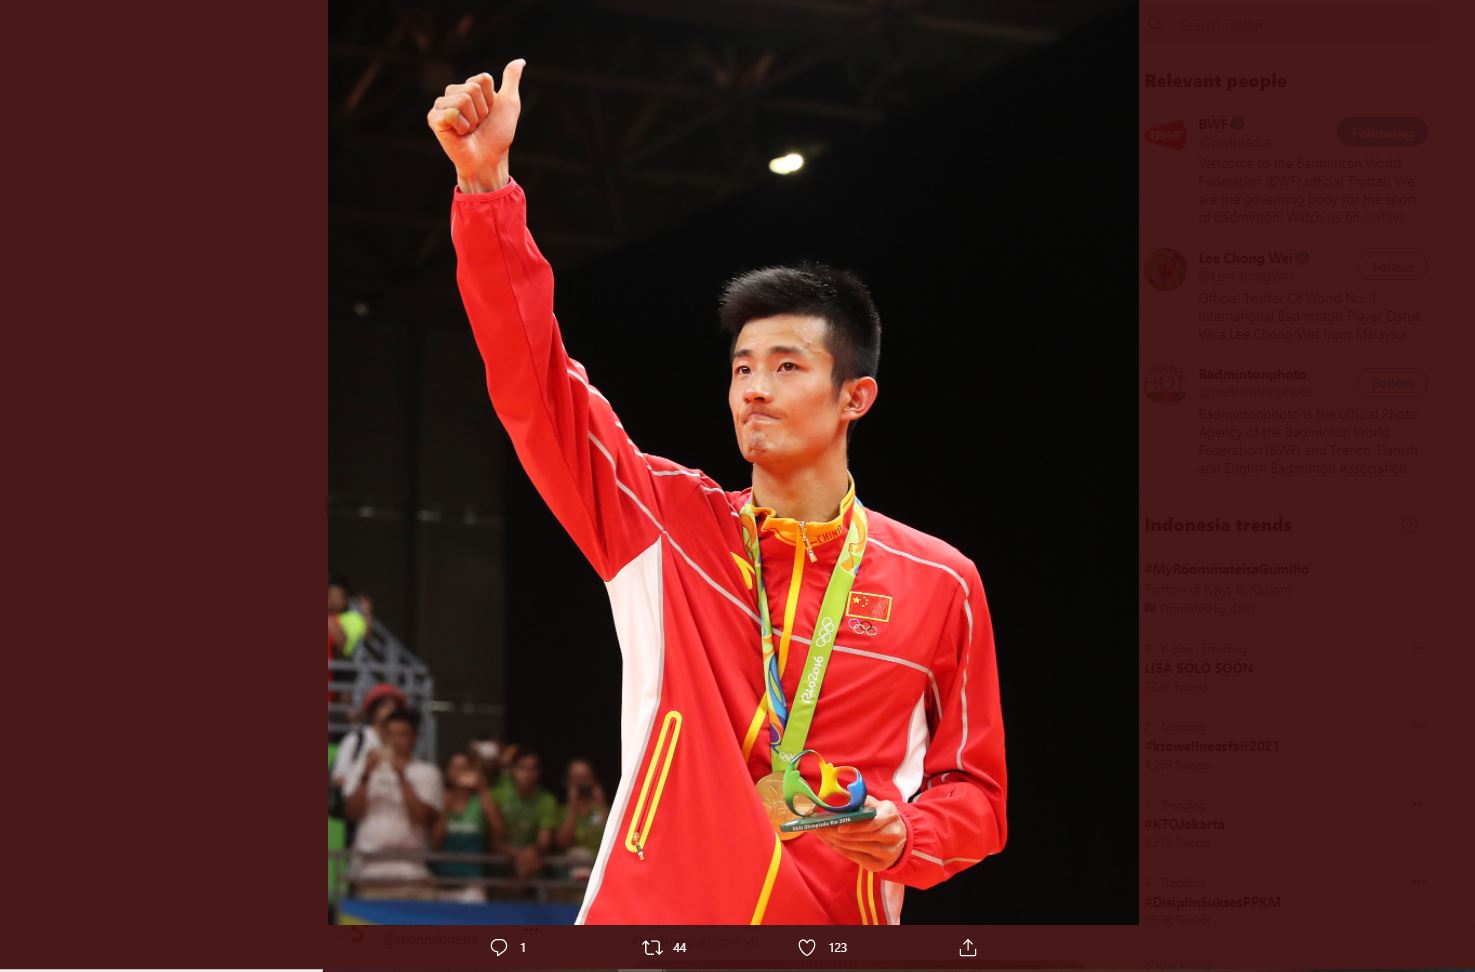 Bulu Tangkis Olimpiade Tokyo: Cina Punya Skuad Kuat, tapi Emas Chen Long Terancam